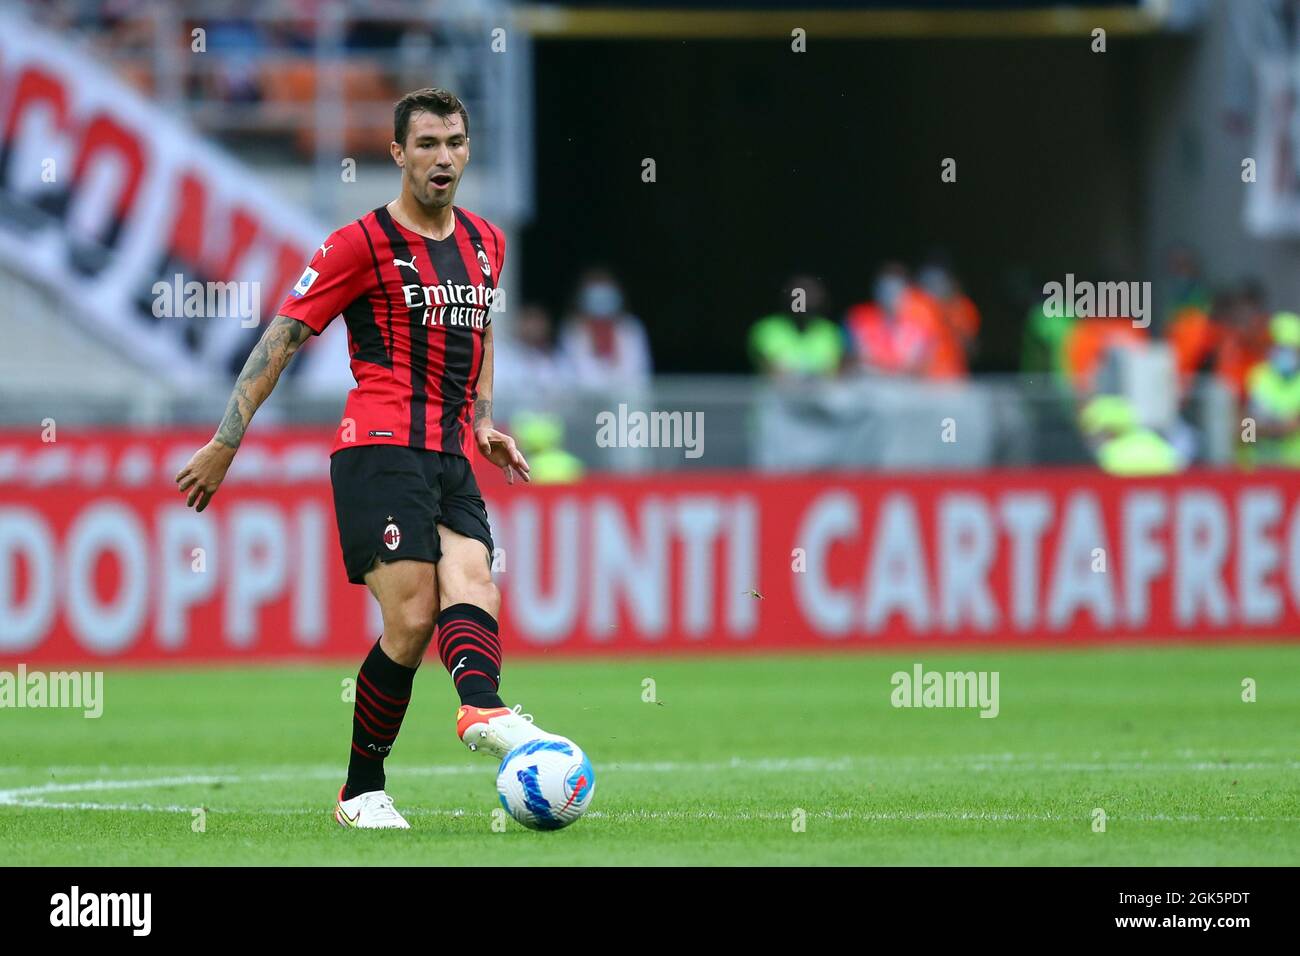 Mailand, Italien. 12. September 2021. Alessio Romagnoli vom AC Mailand steuert den Ball während des Serie-A-Spiels zwischen dem AC Mailand und der SS Lazio. Stockfoto